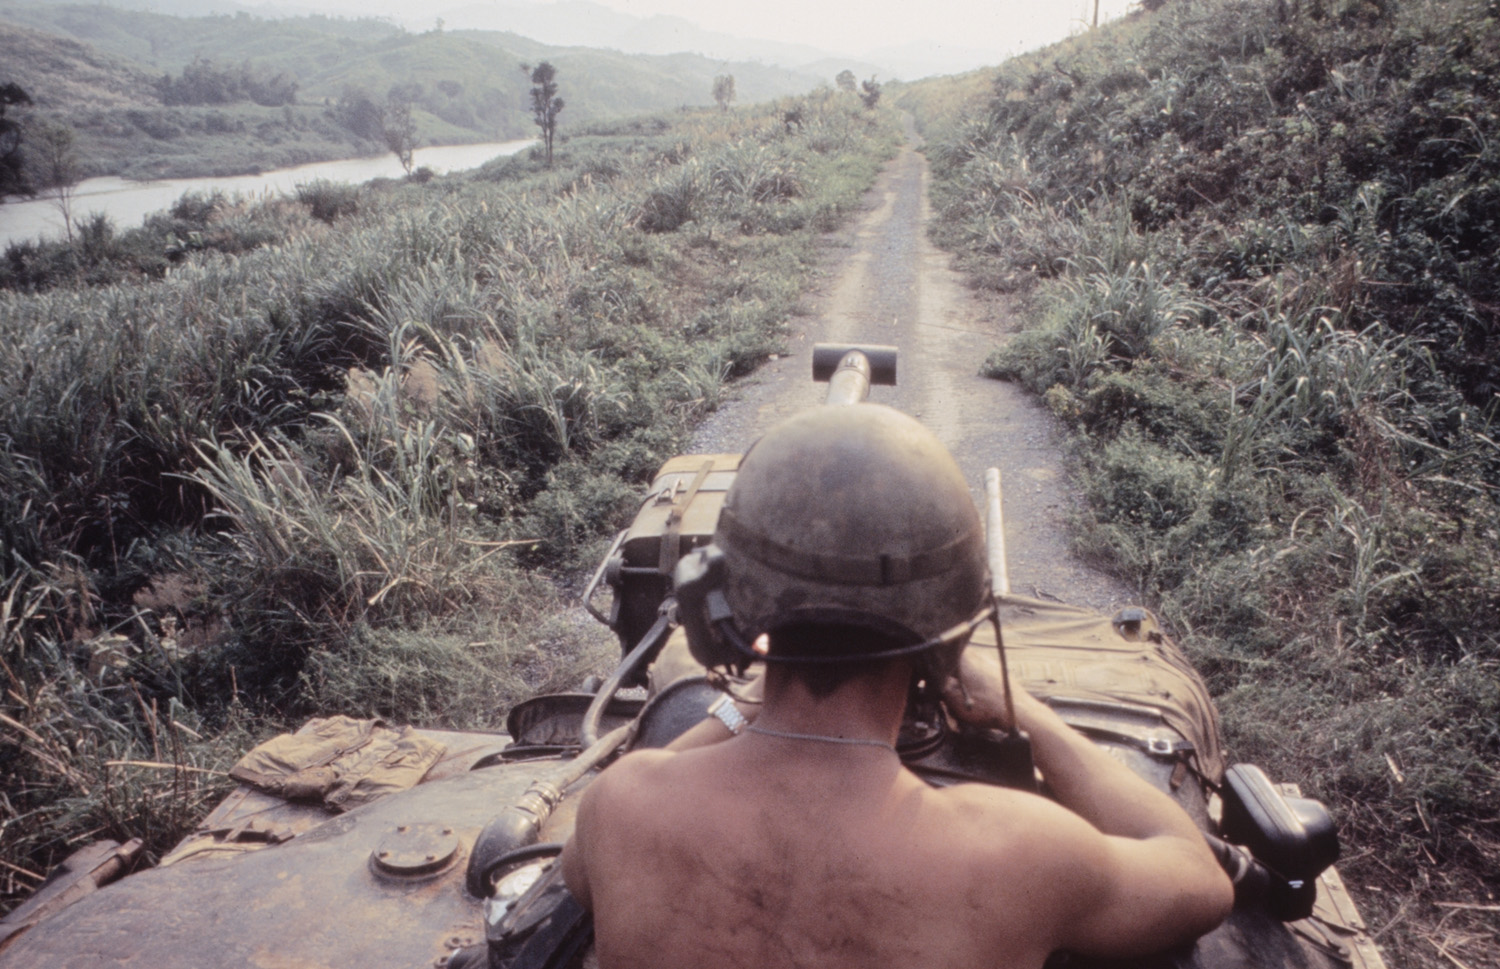 "Route 9" in Vietnam during Operation Pegasus, 1968.